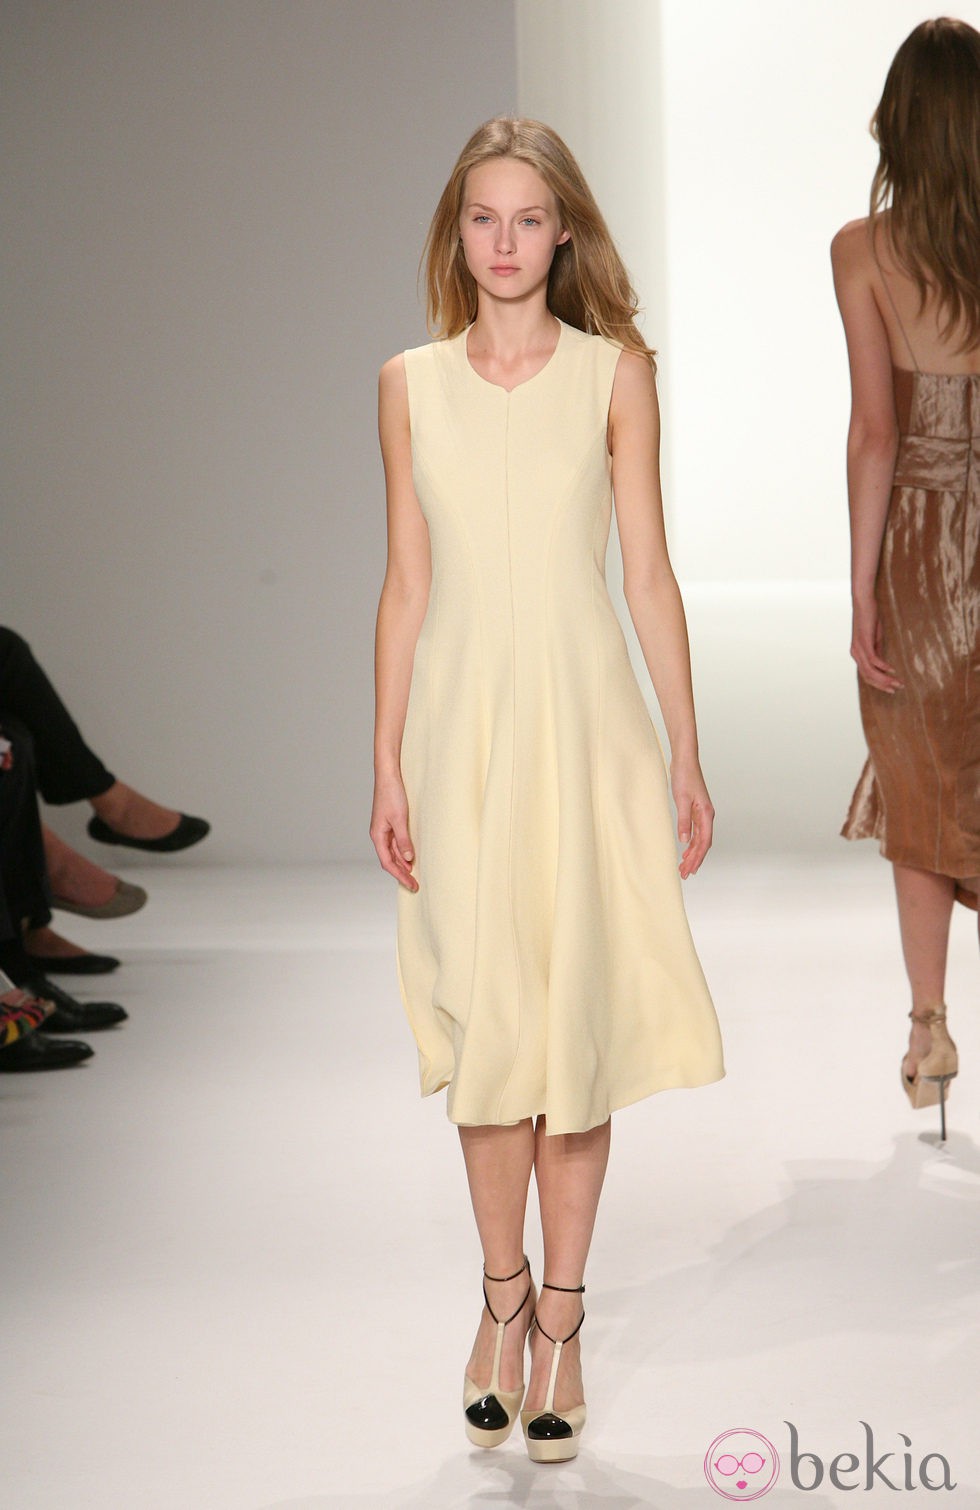 Vestido en tono marfil de Calvin Klein, colección primavera de 2012